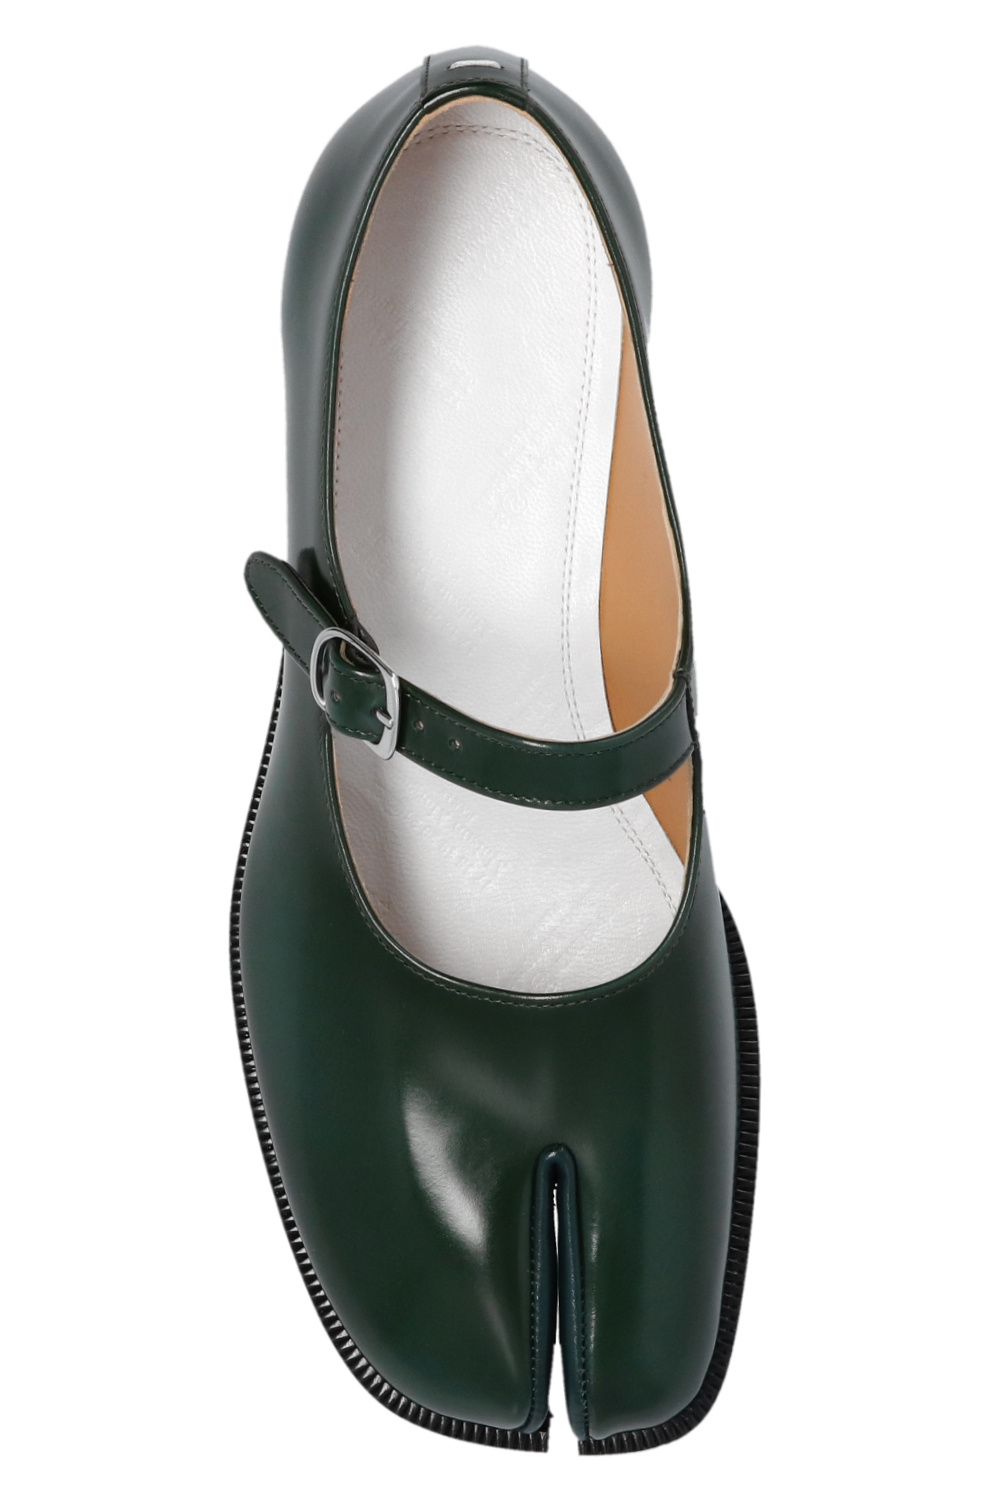 Louis Vuitton Leather Double Strap Mary Jane Pumps - Size 8.5 / 38.5, Louis  Vuitton Shoes